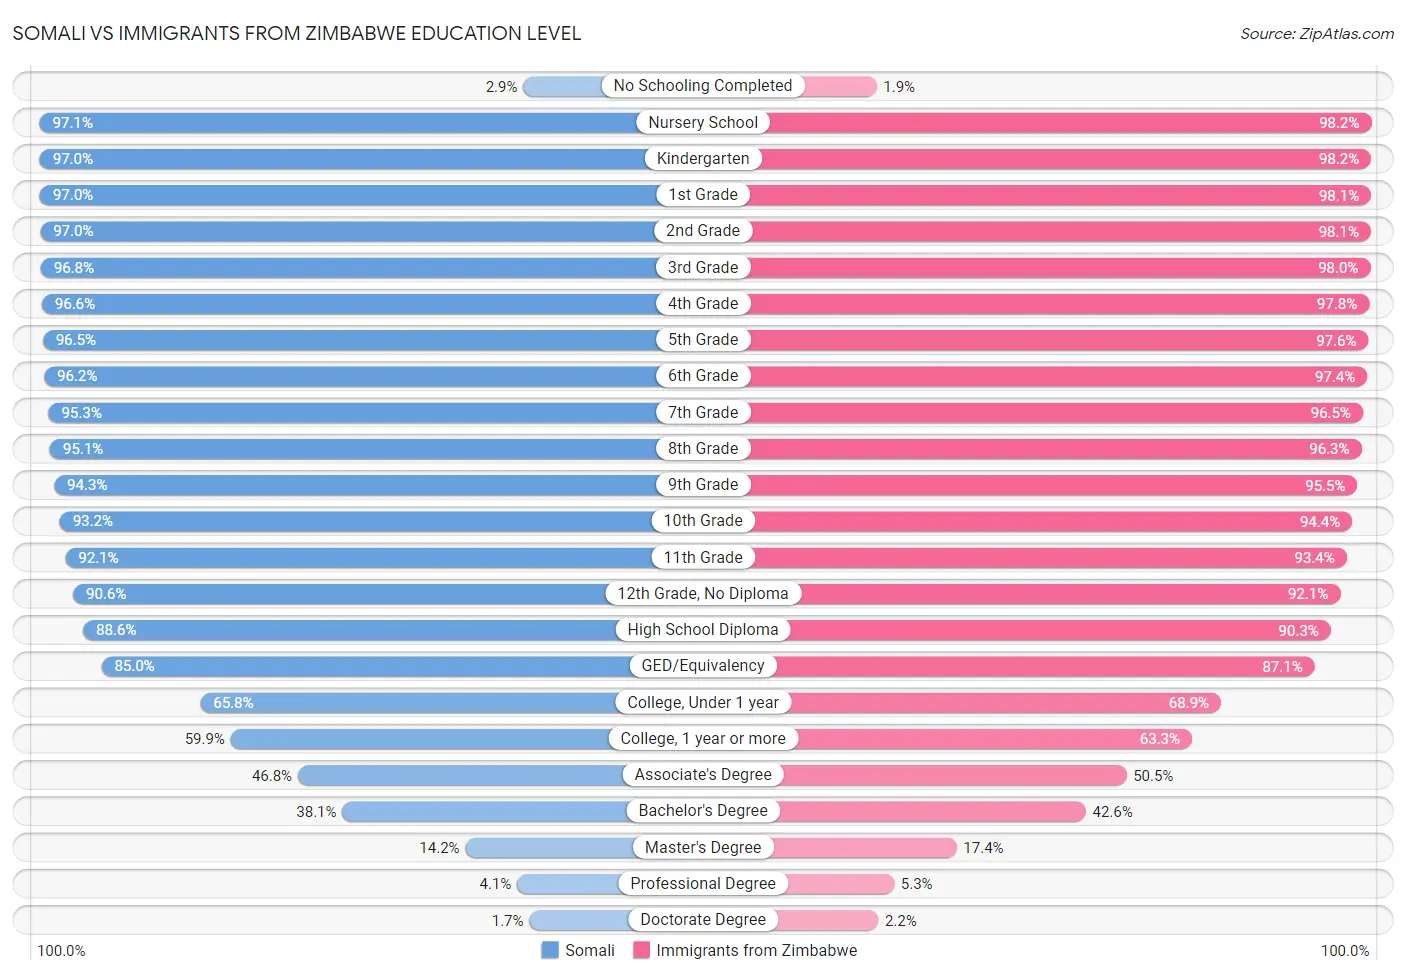 Somali vs Immigrants from Zimbabwe Education Level